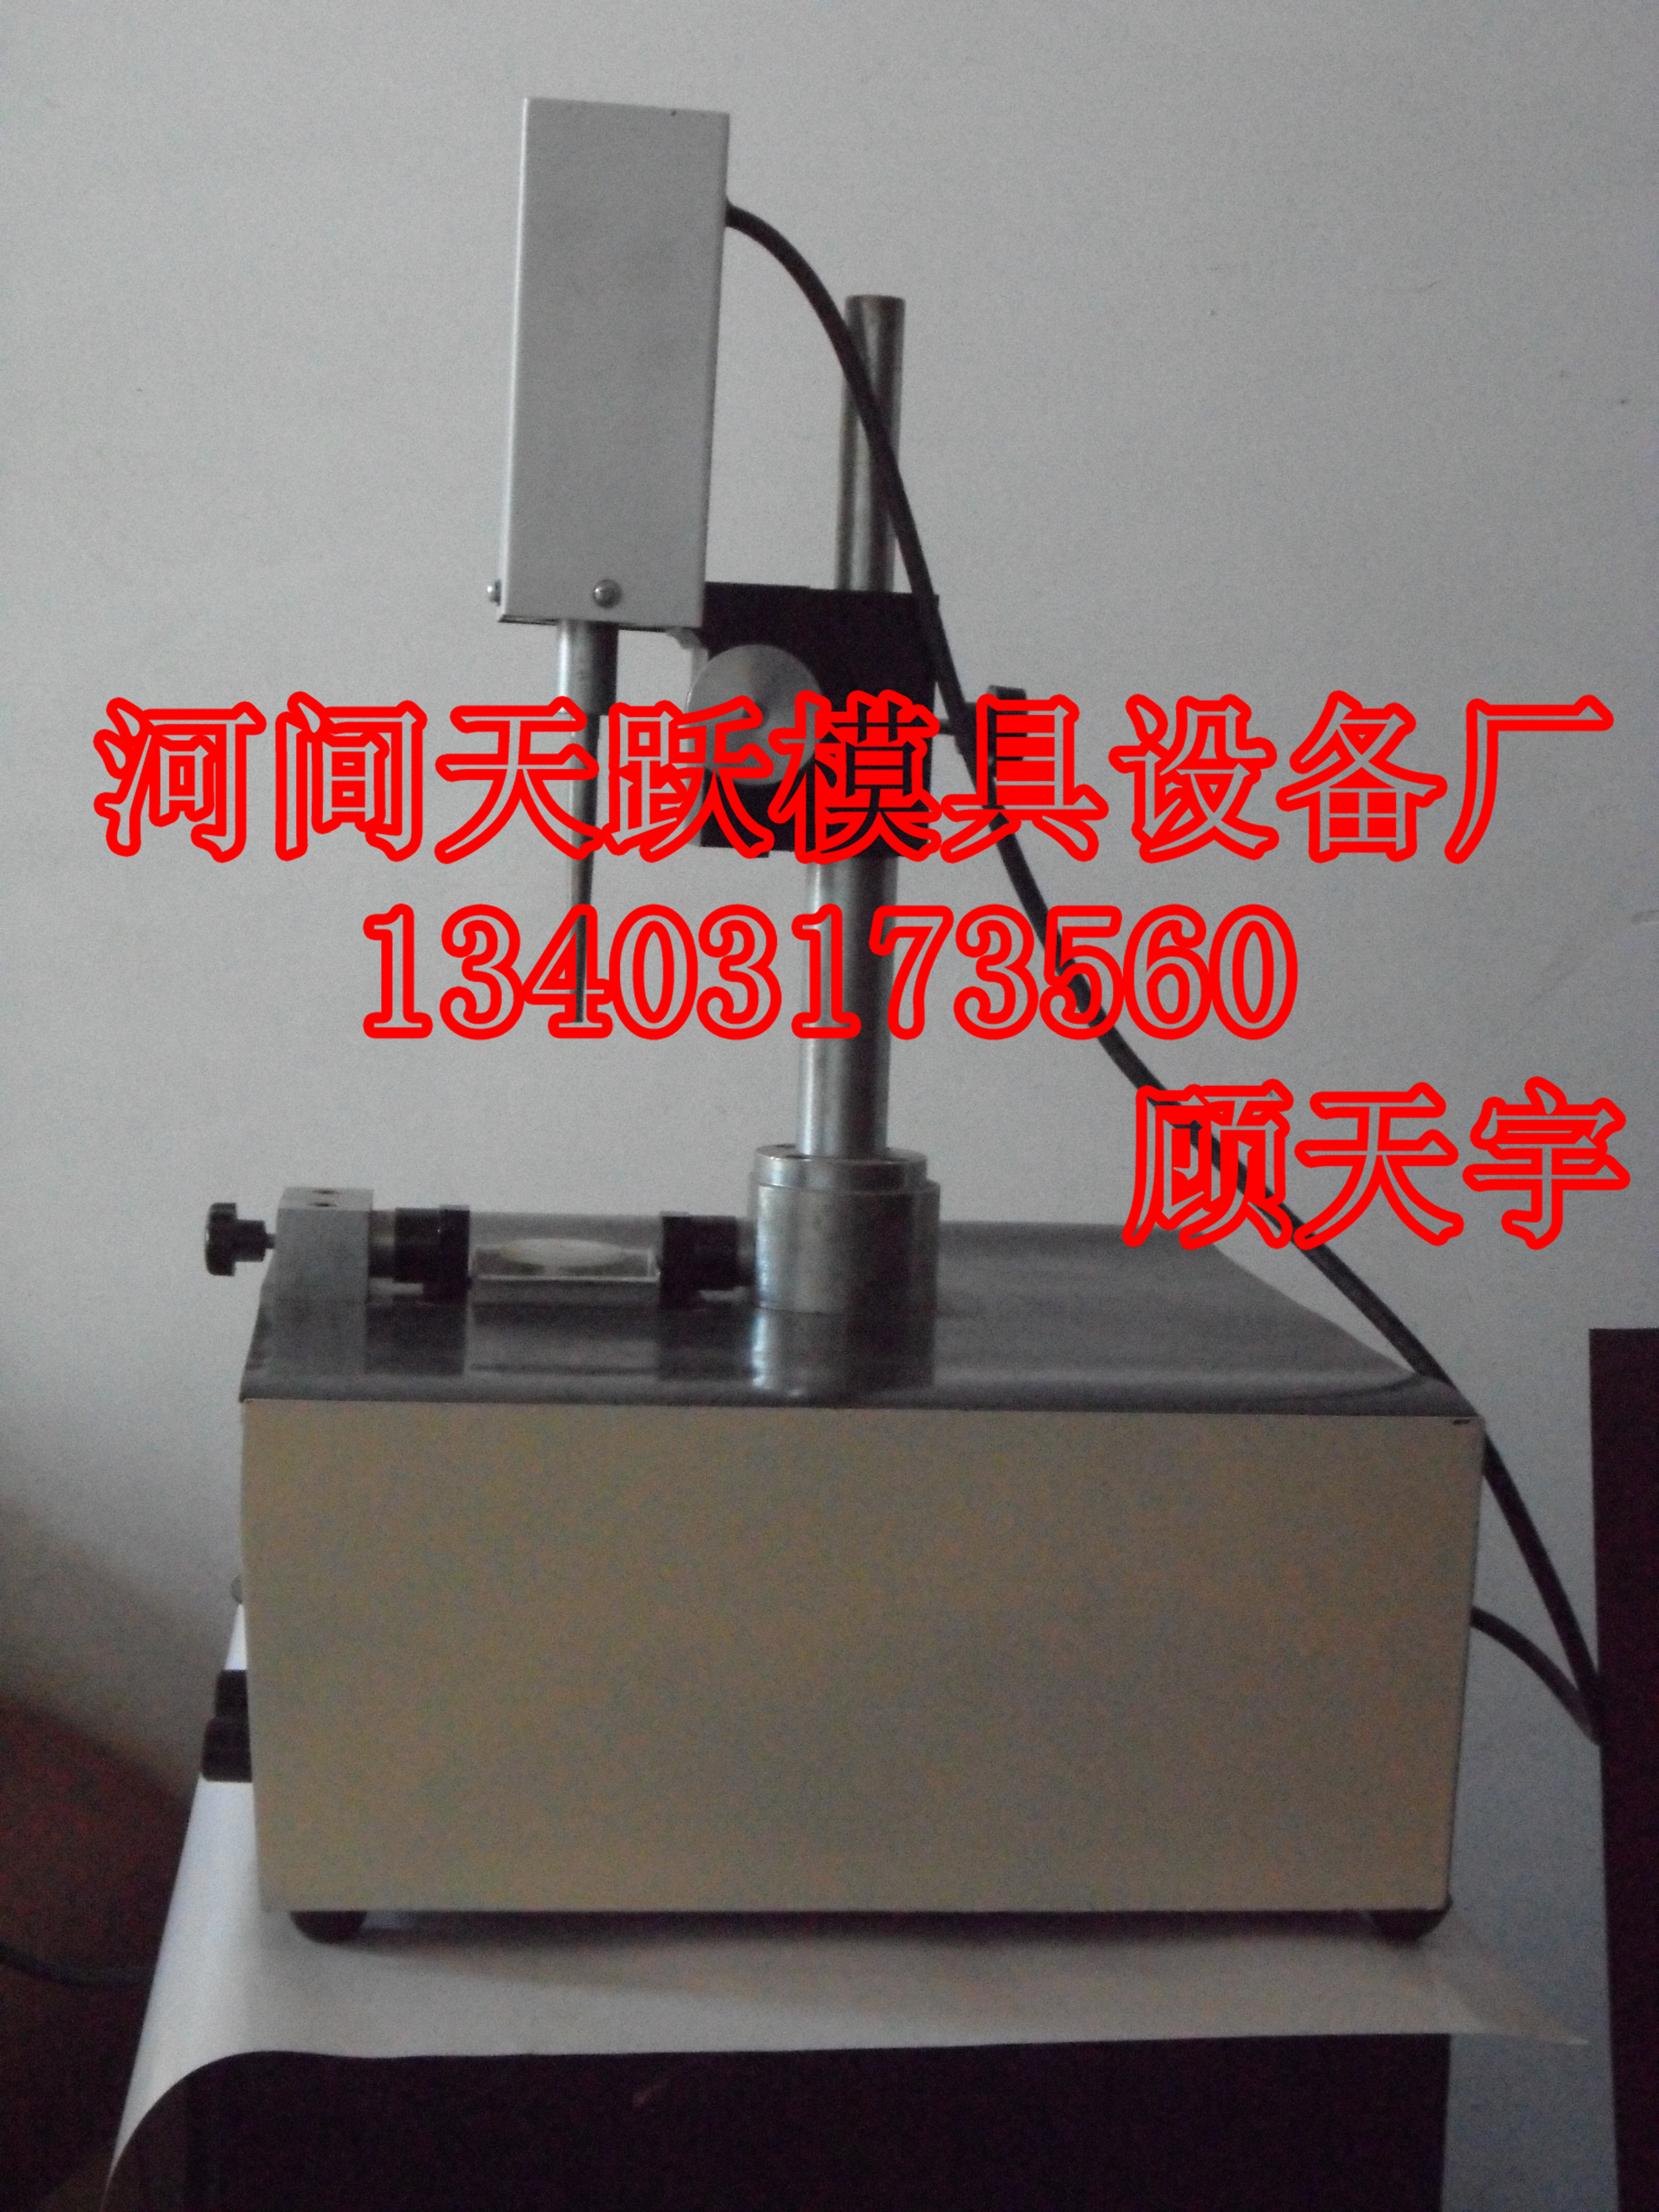 沧州市TY-100型拉丝模具研磨机厂家天跃TY-100型拉丝模具超声波研磨机 TY-100型超声波研磨机 TY-100型拉丝模具研磨机